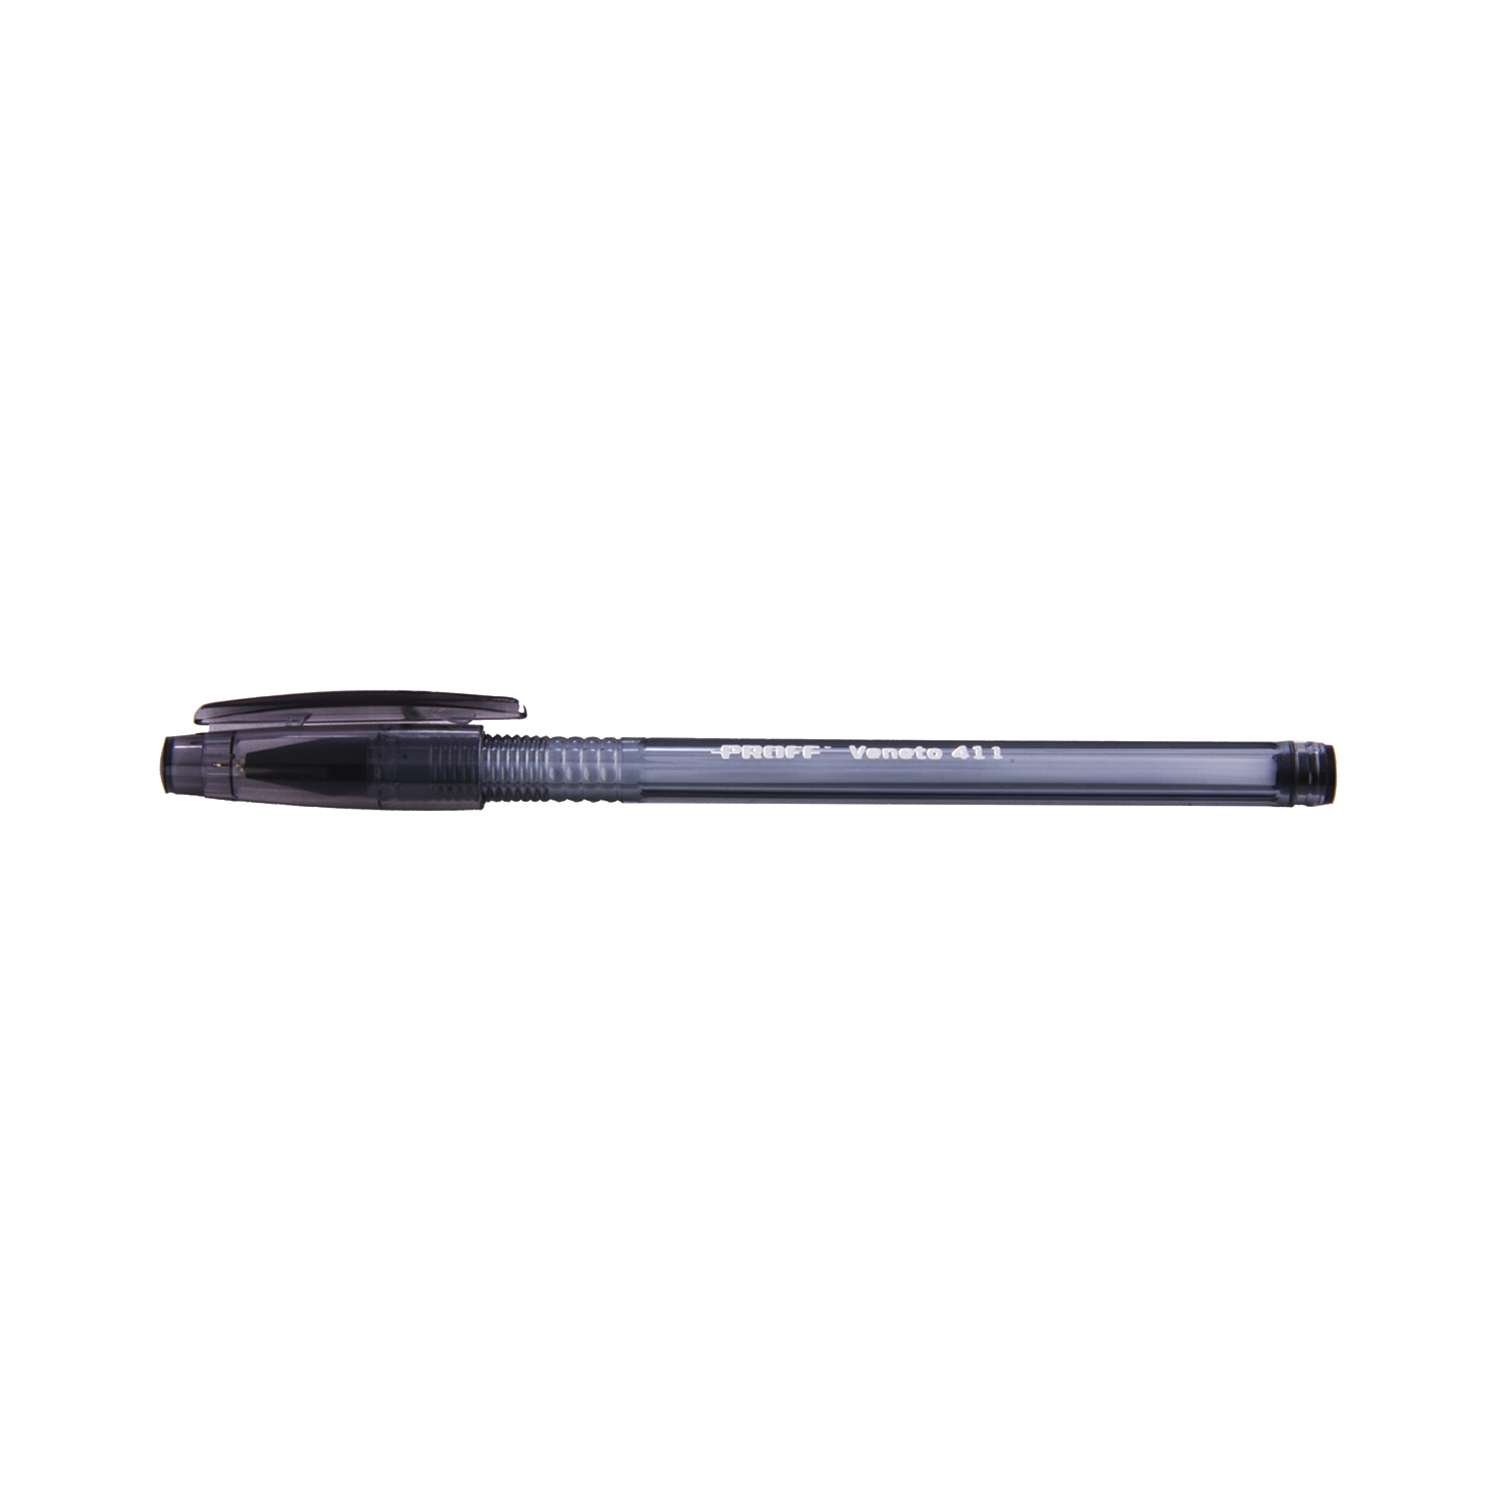 Ручка Proff шариковая черная Veneto 411 (0.7 мм) - фото 1